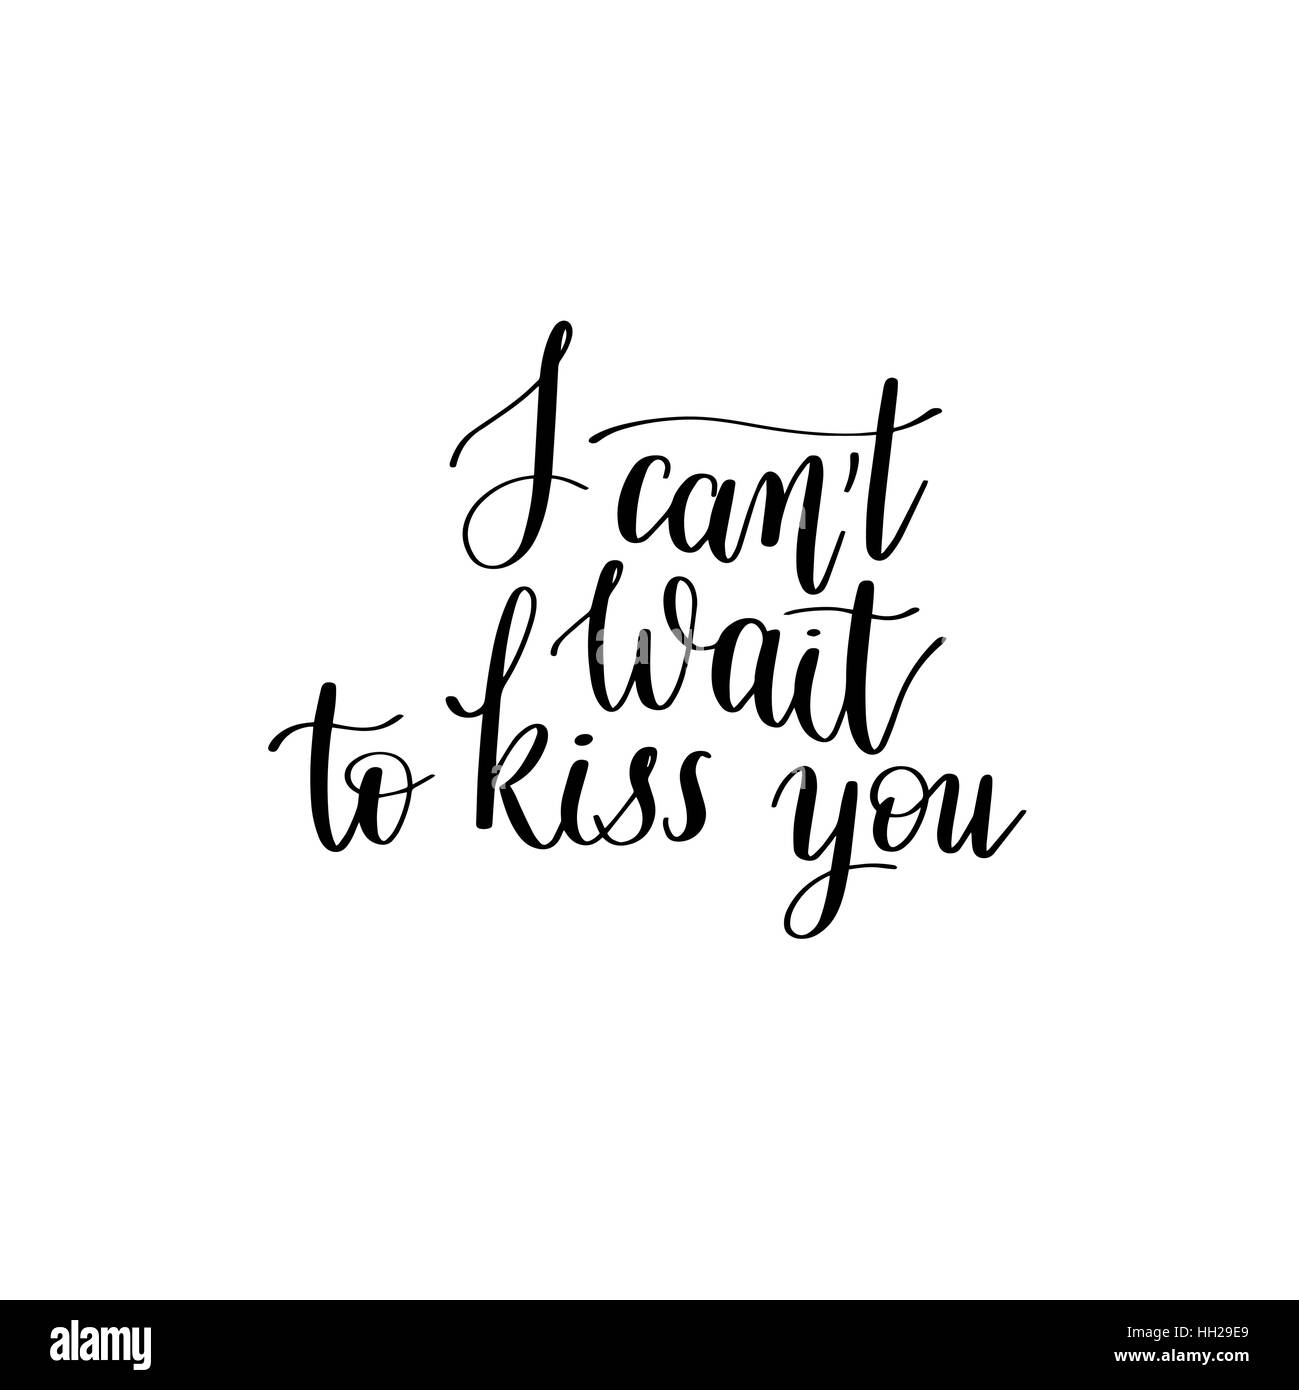 ich kann nicht küssen